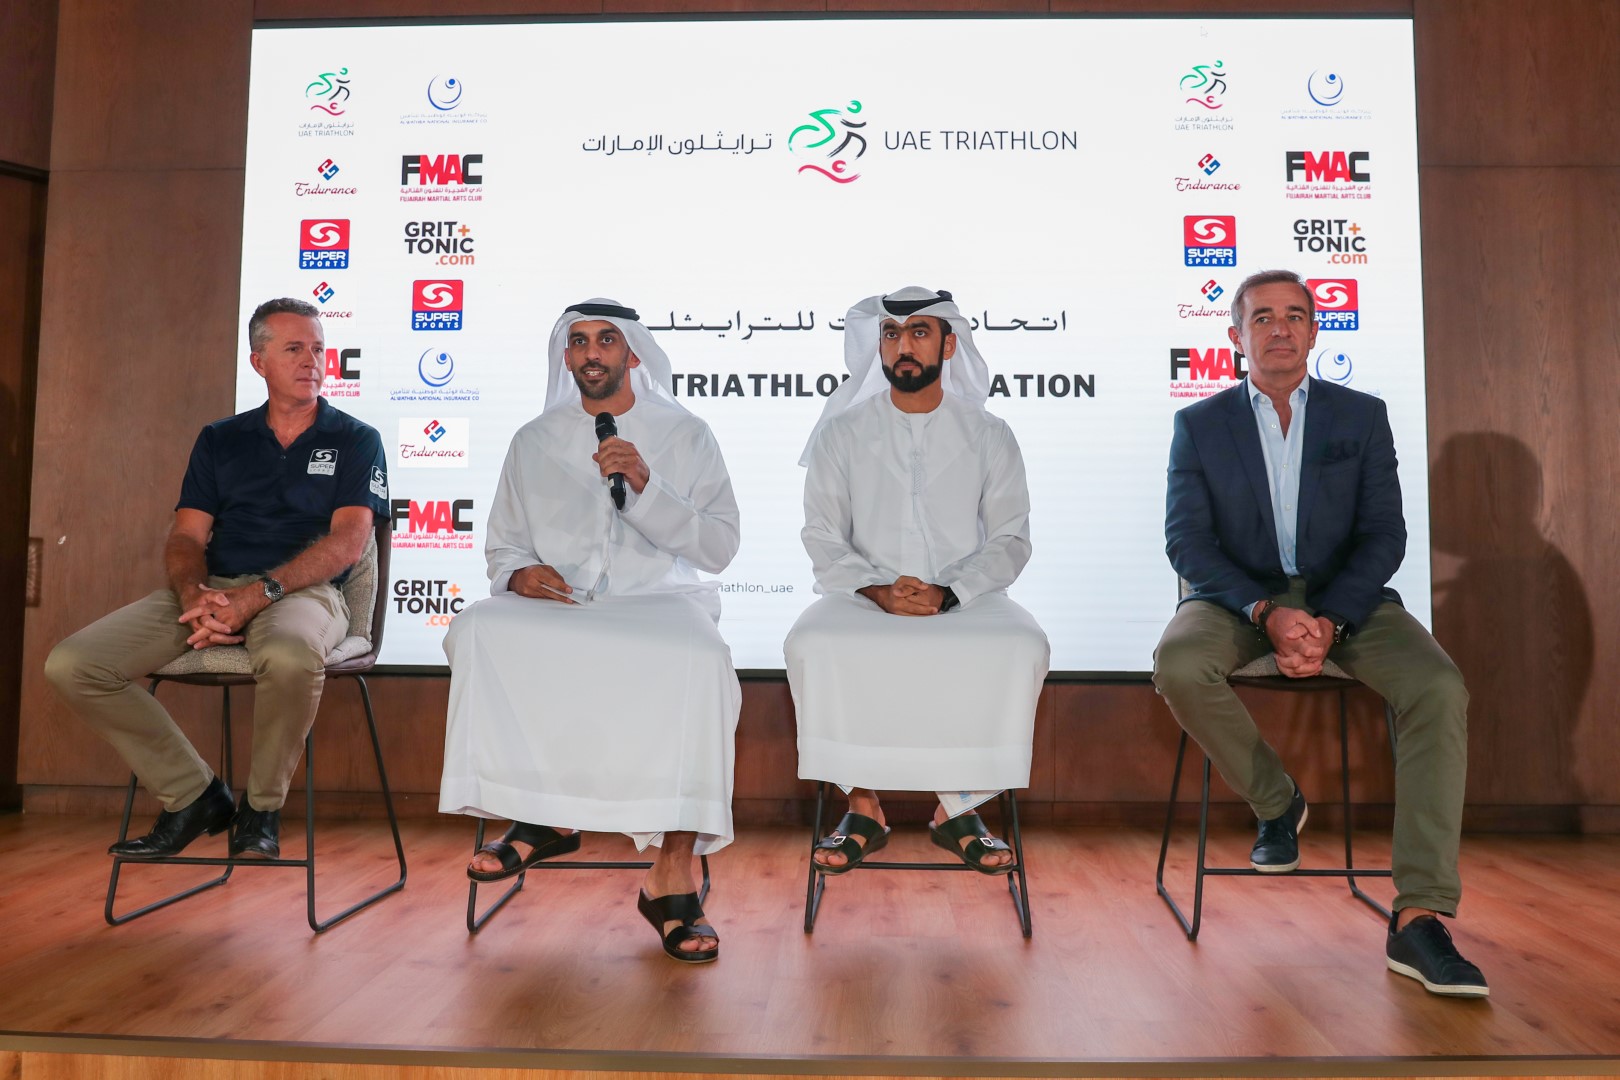 اتحاد الإمارات للترايثلون يعلن اطلاق أول دوري للعبة في أكتوبر المقبل